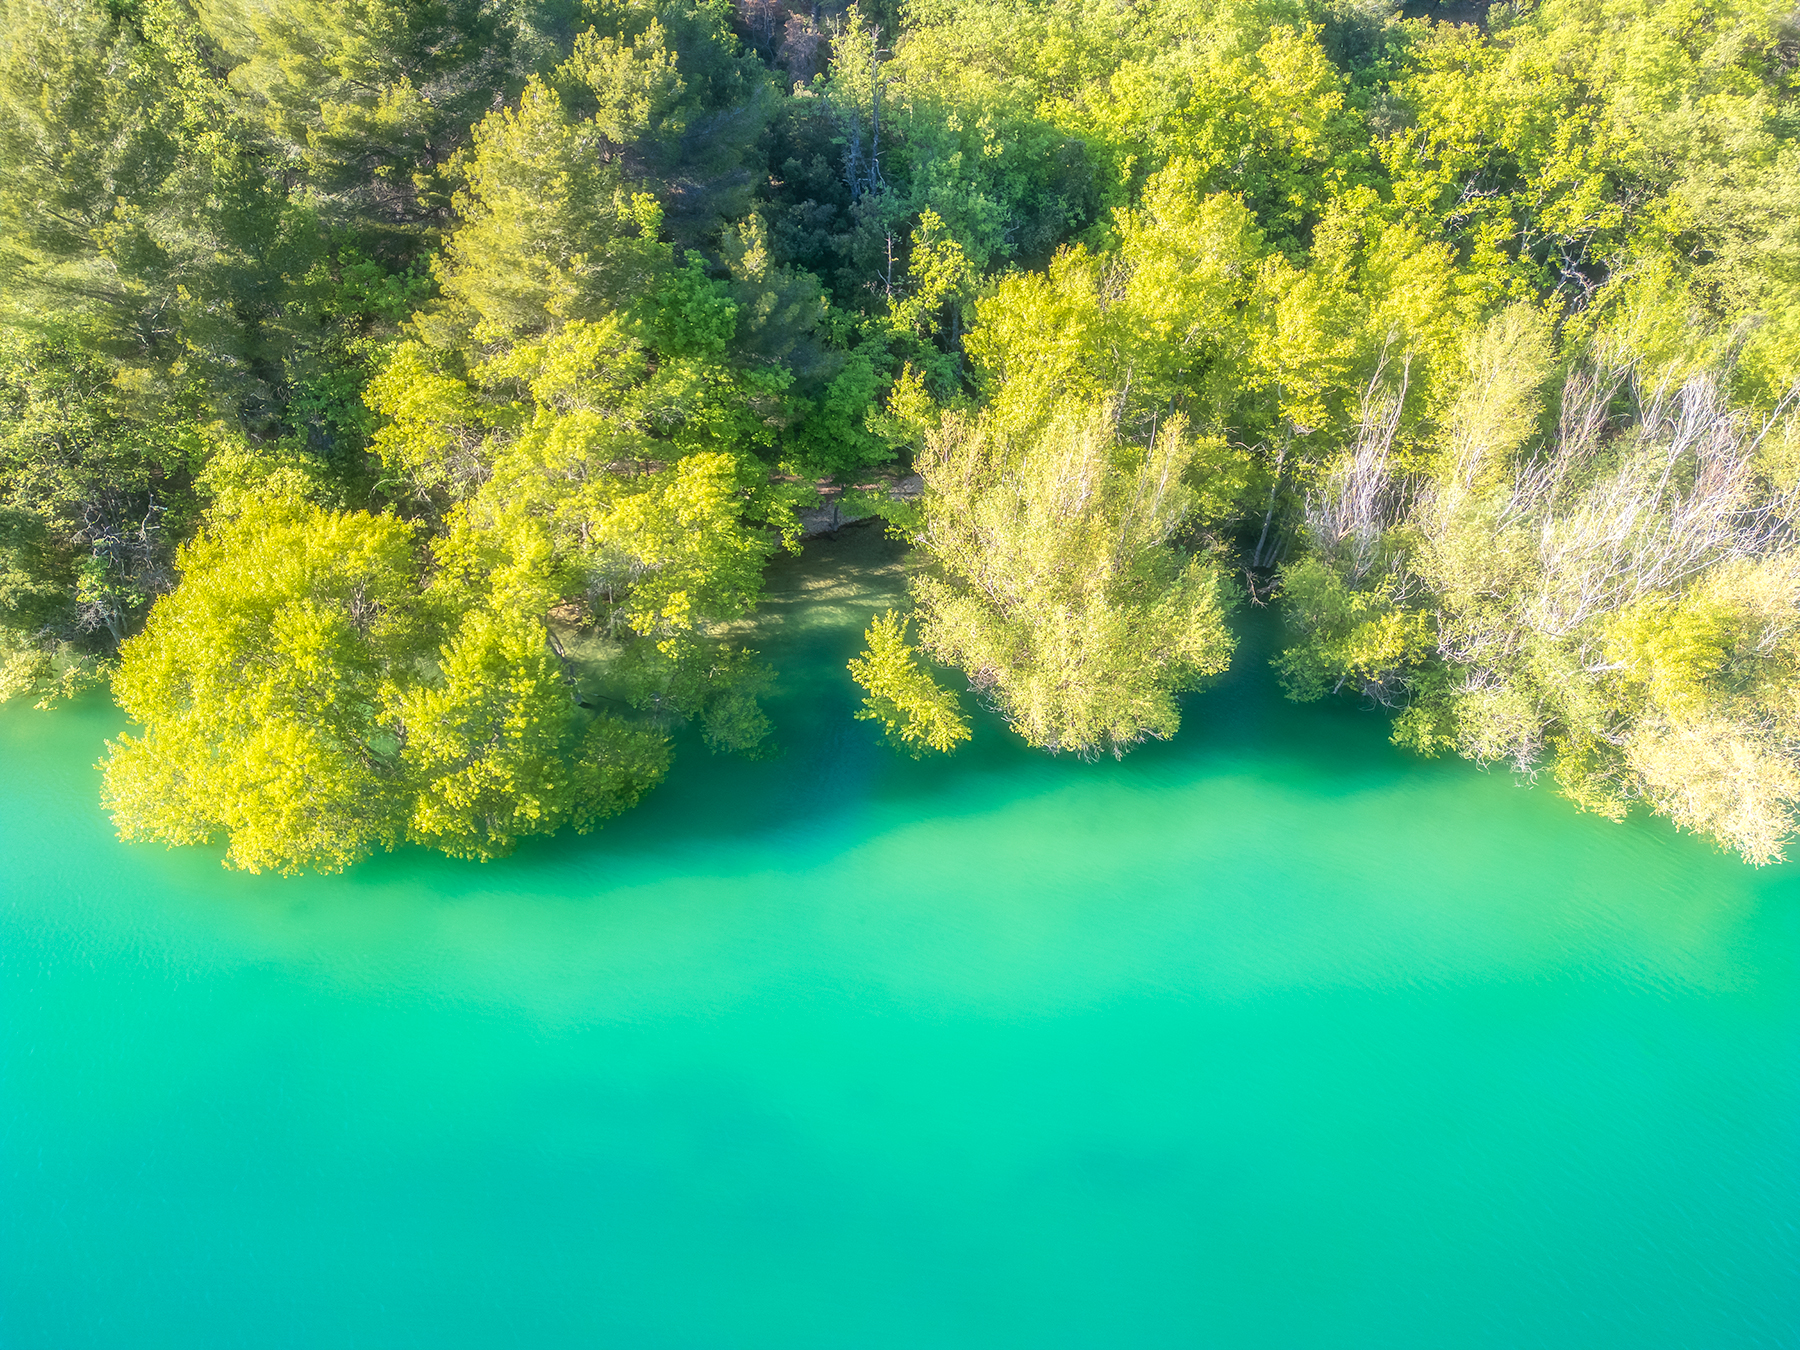 l'eau bleu turquoise du lac de Sainte-Croix